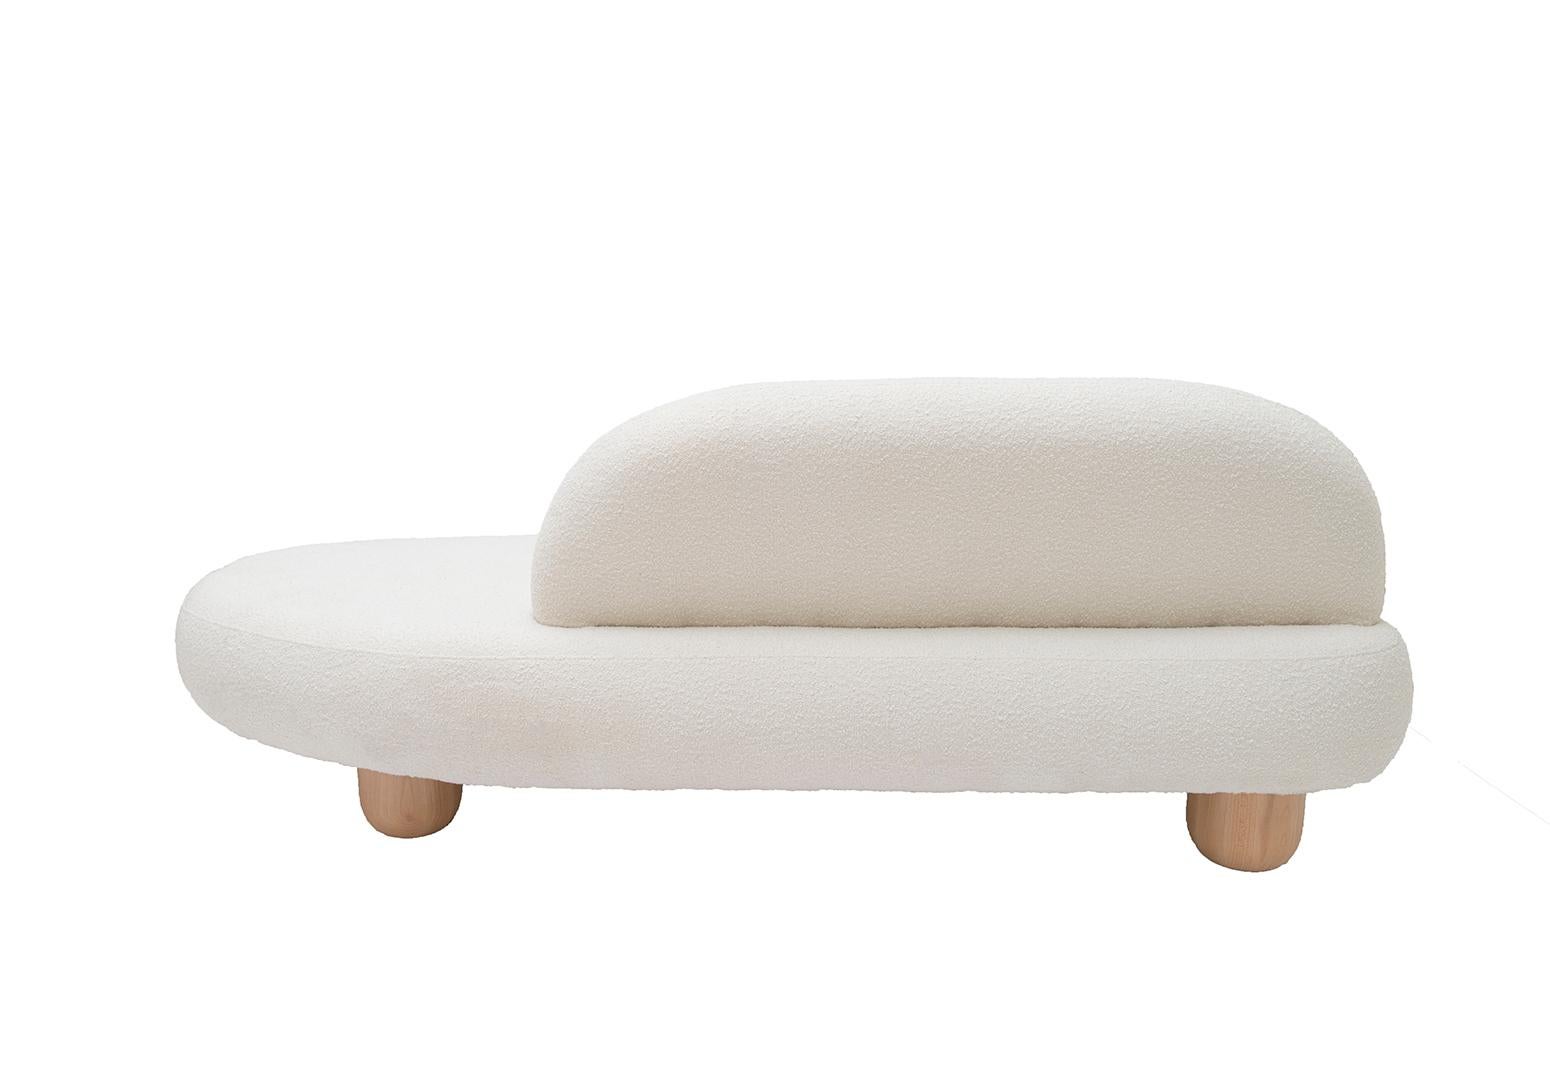 Polish Object 047 Sofa by NG Design